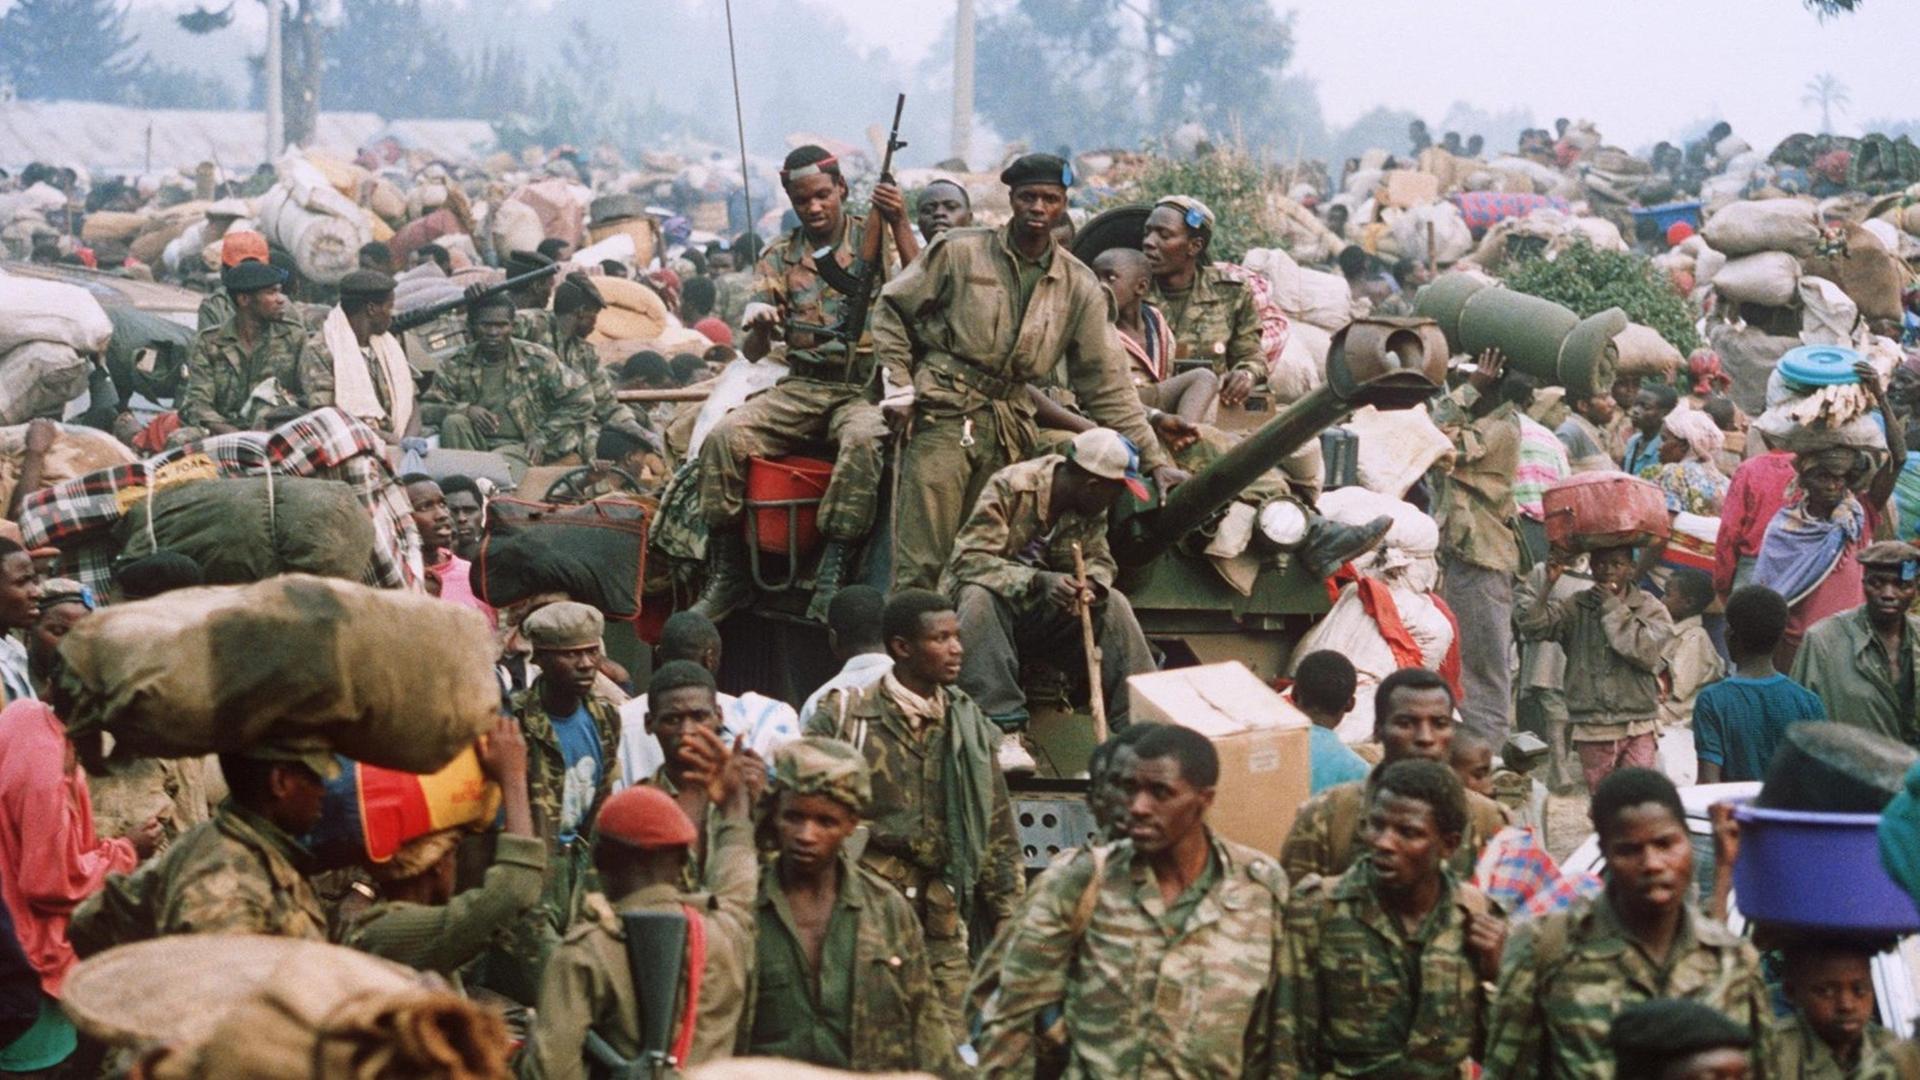 Zusammen mit tausenden von Flüchtlingen erreichen am 17.7.1994 auch Militärs des gestürzten Regimes (M) die Grenzstadt Goma in Zaire. Unter ihnen sind auch Milizen der Hutu-Extremisten, die für den Völkermord verantwortlich gemacht werden. Fast eine halbe Million Ruander flohen ins benachbarte Ausland.